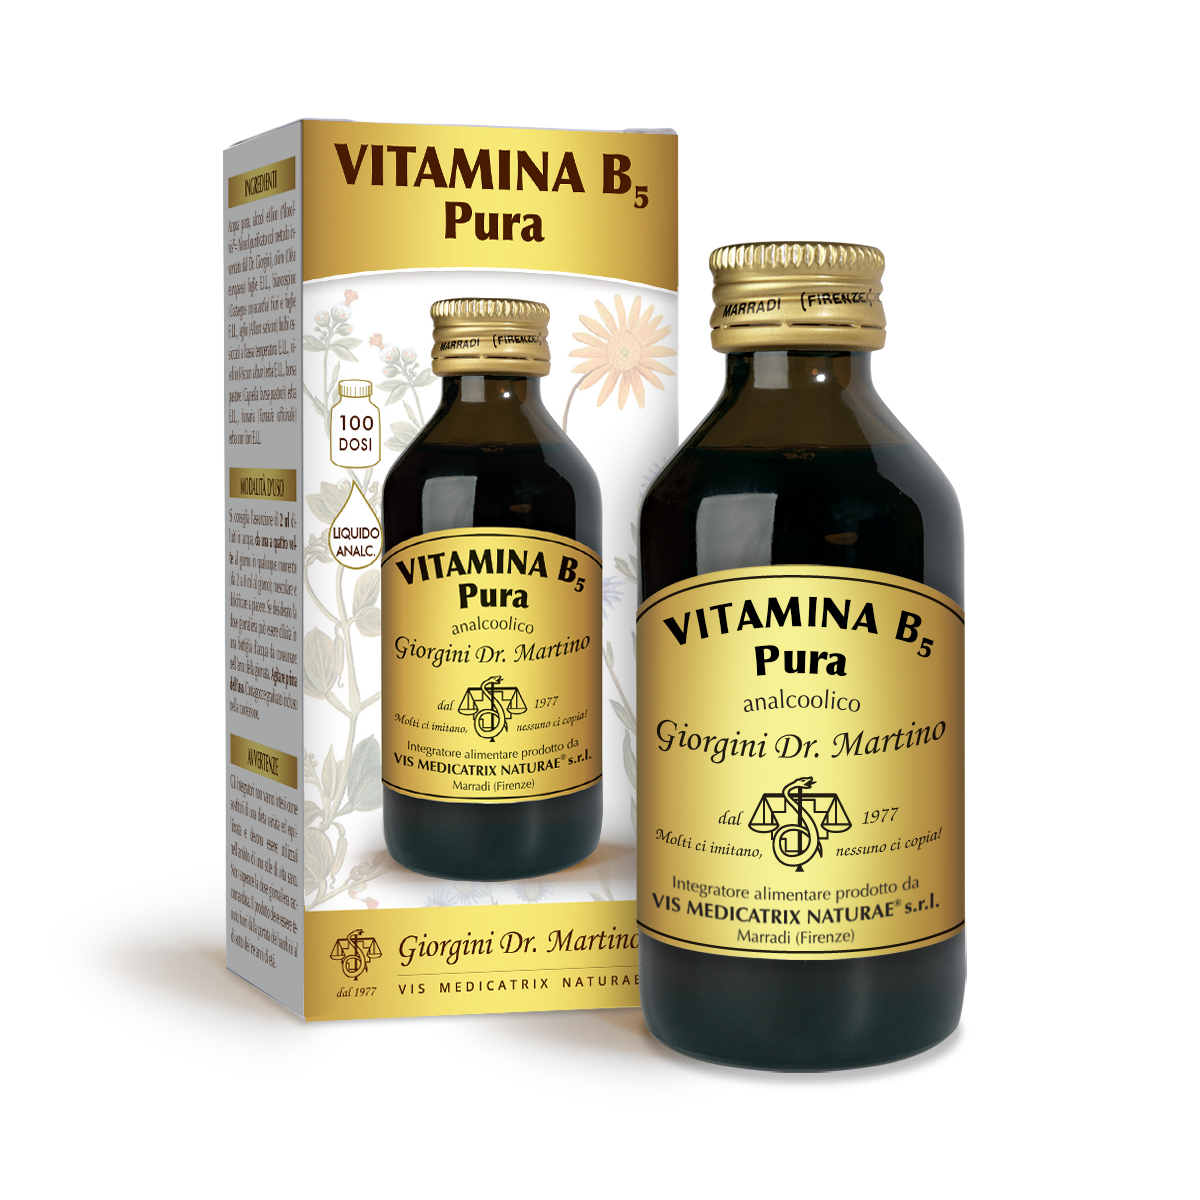 VITAMINA B5 Pura liquido analc. 100 ml